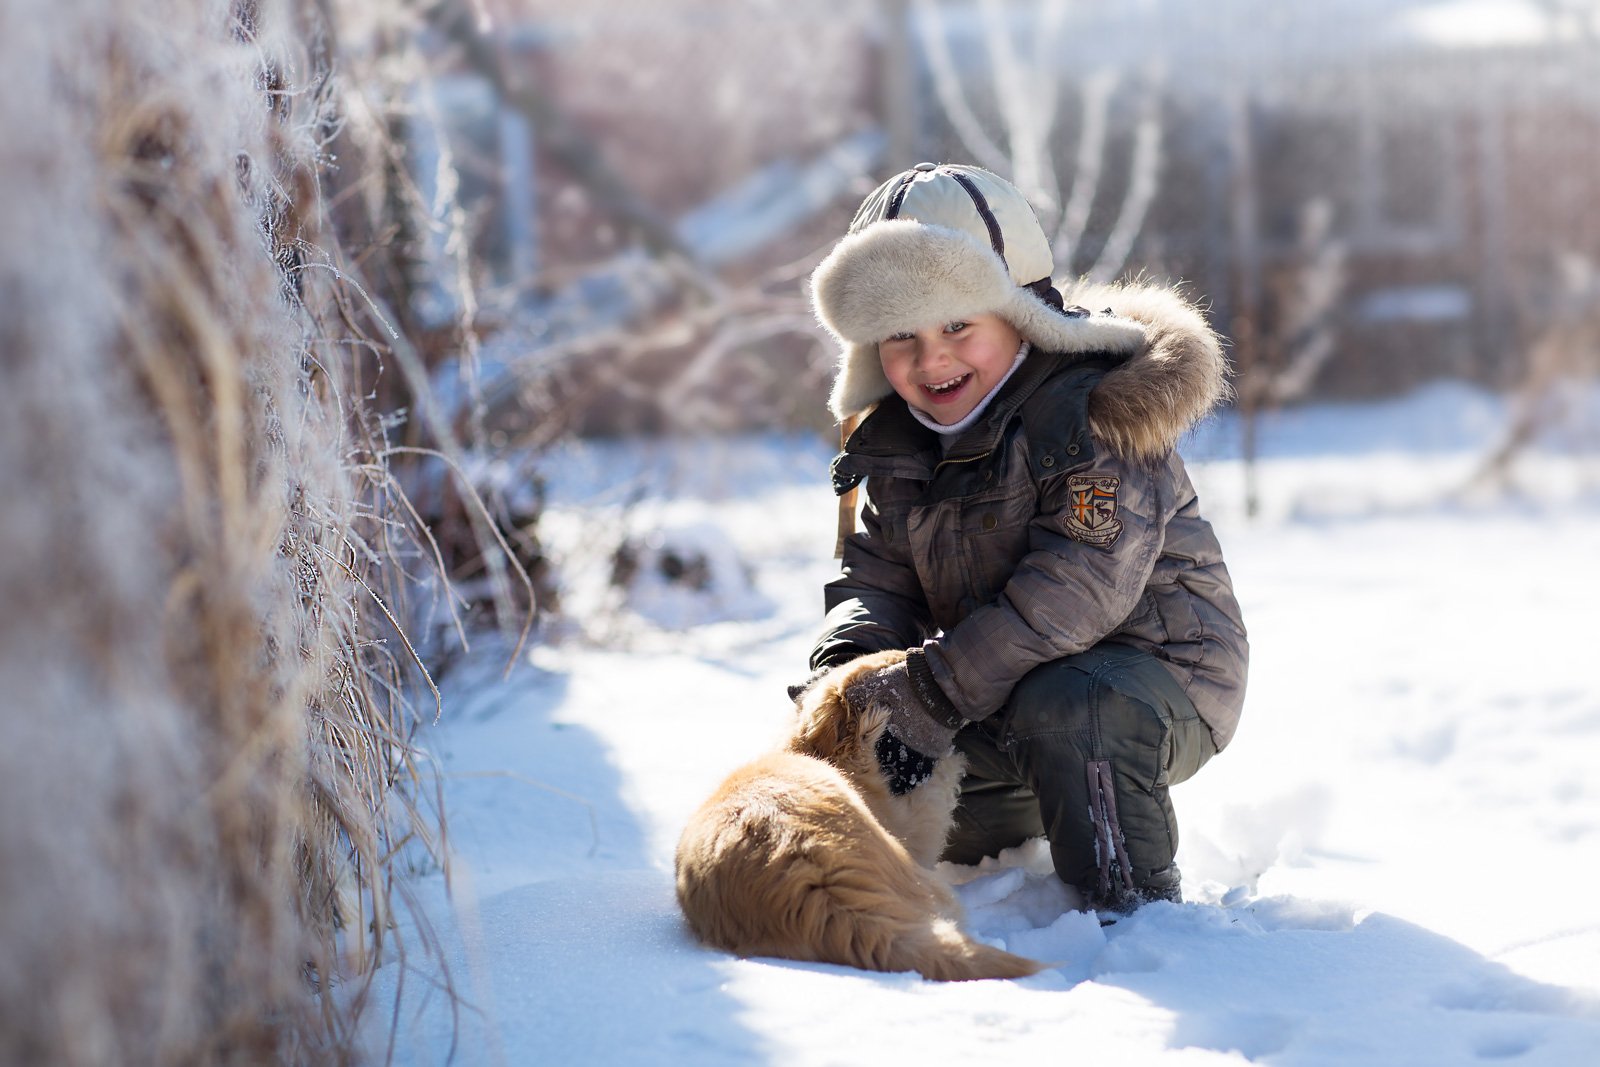 зима снег ребенок собака друг мороз семья радость счастье игра, Евгения Брусенцова